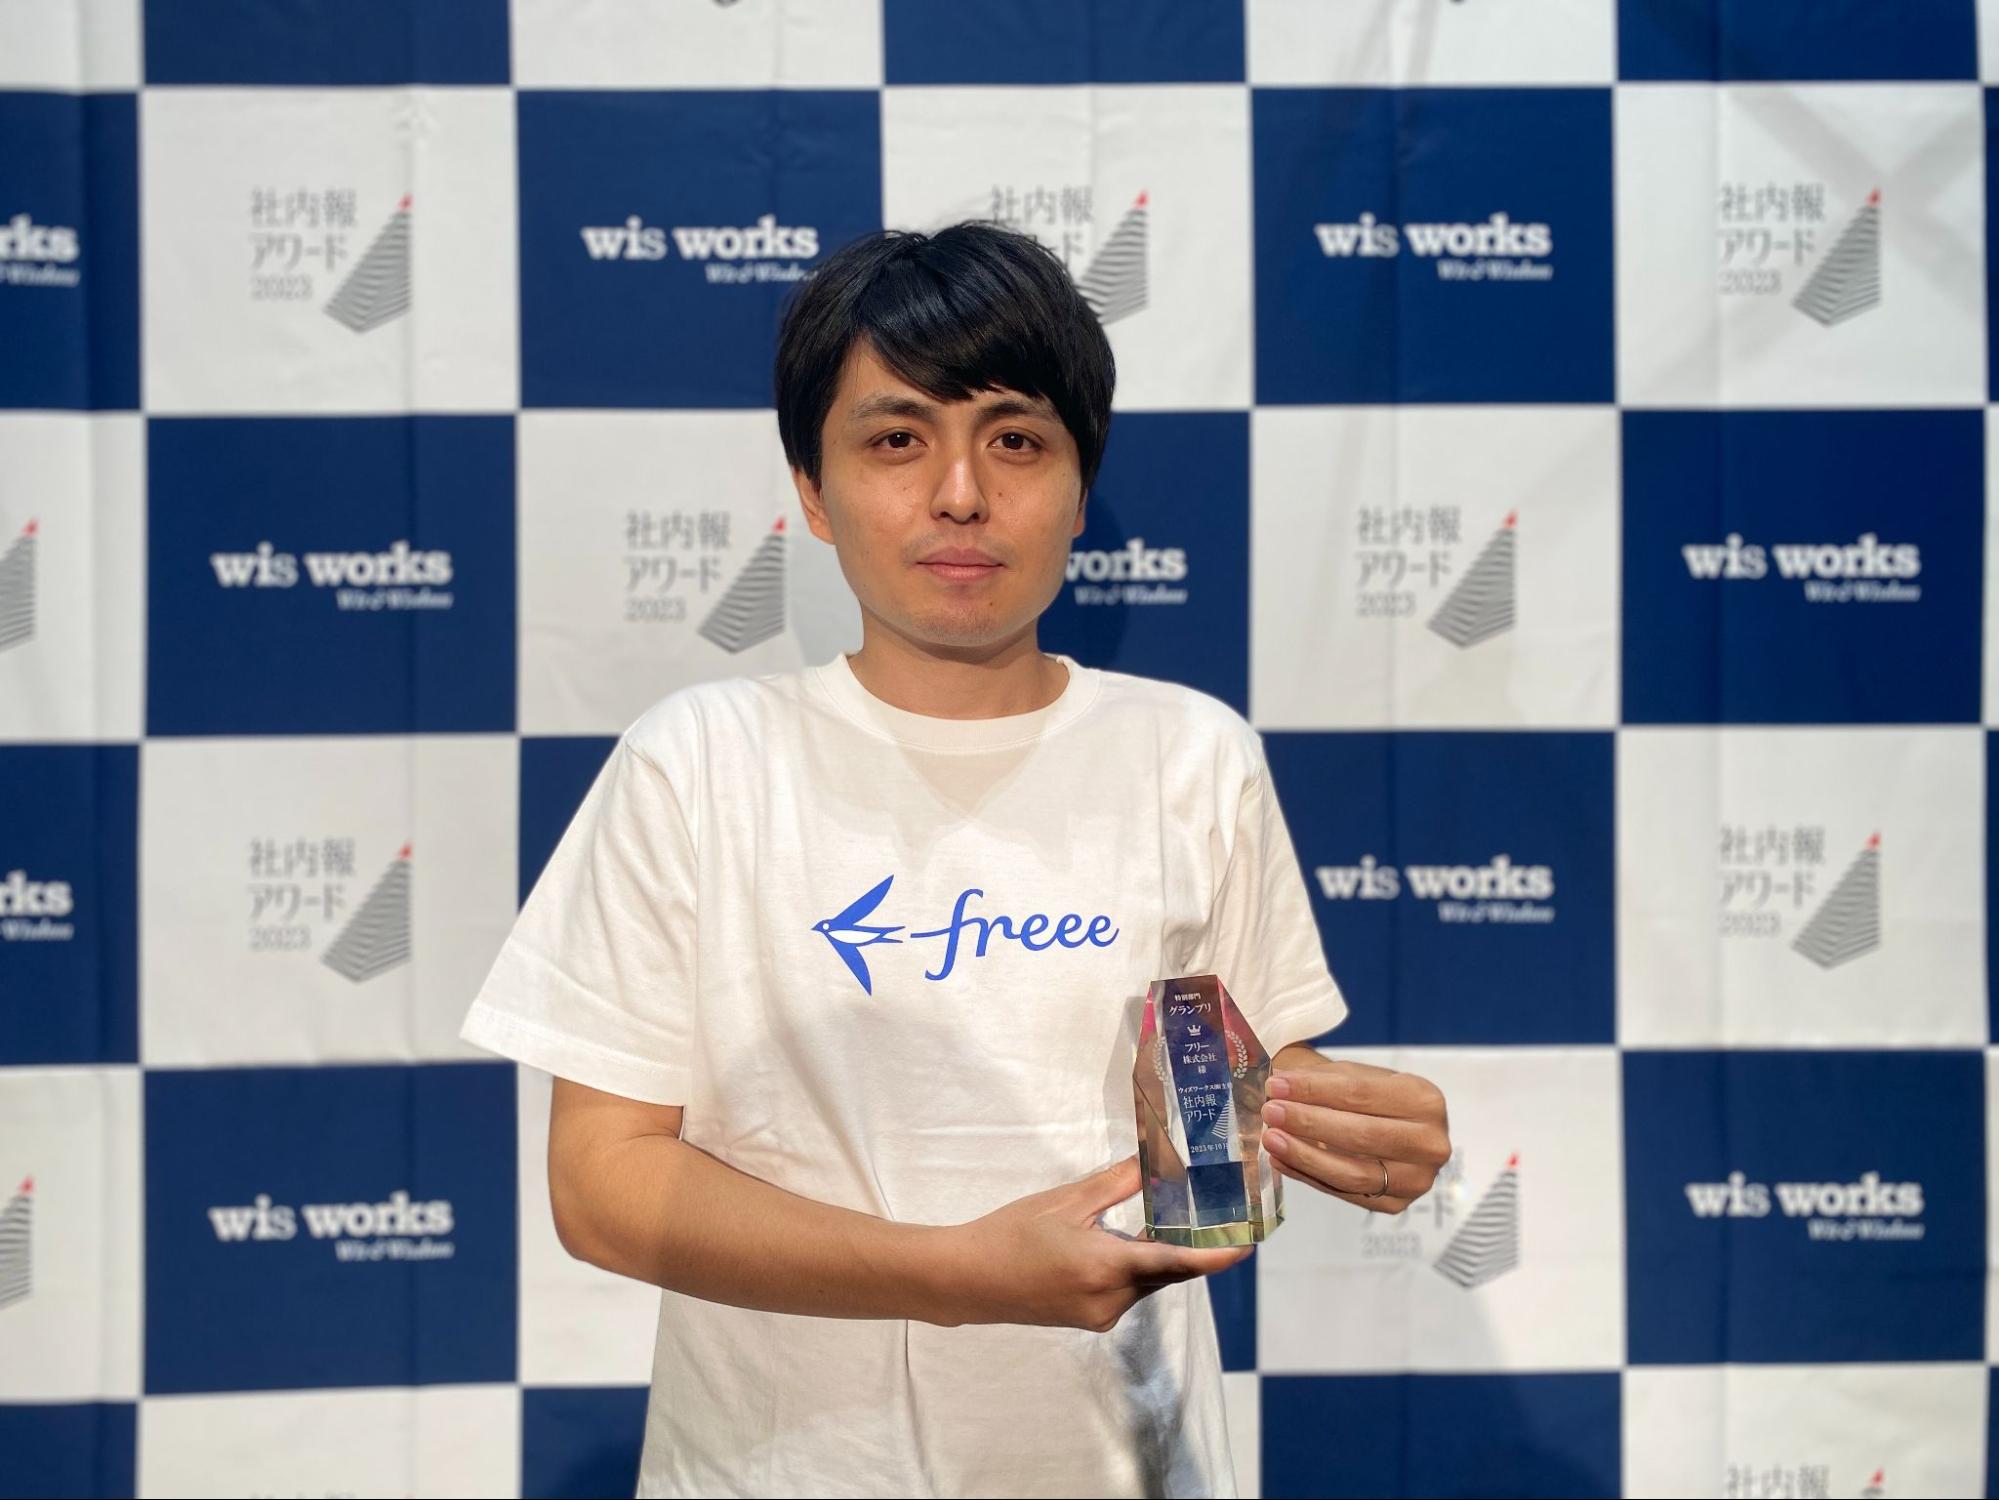 受賞トロフィーを手にした岡田さんの上半身写真。白のfreeeTシャツ着用。